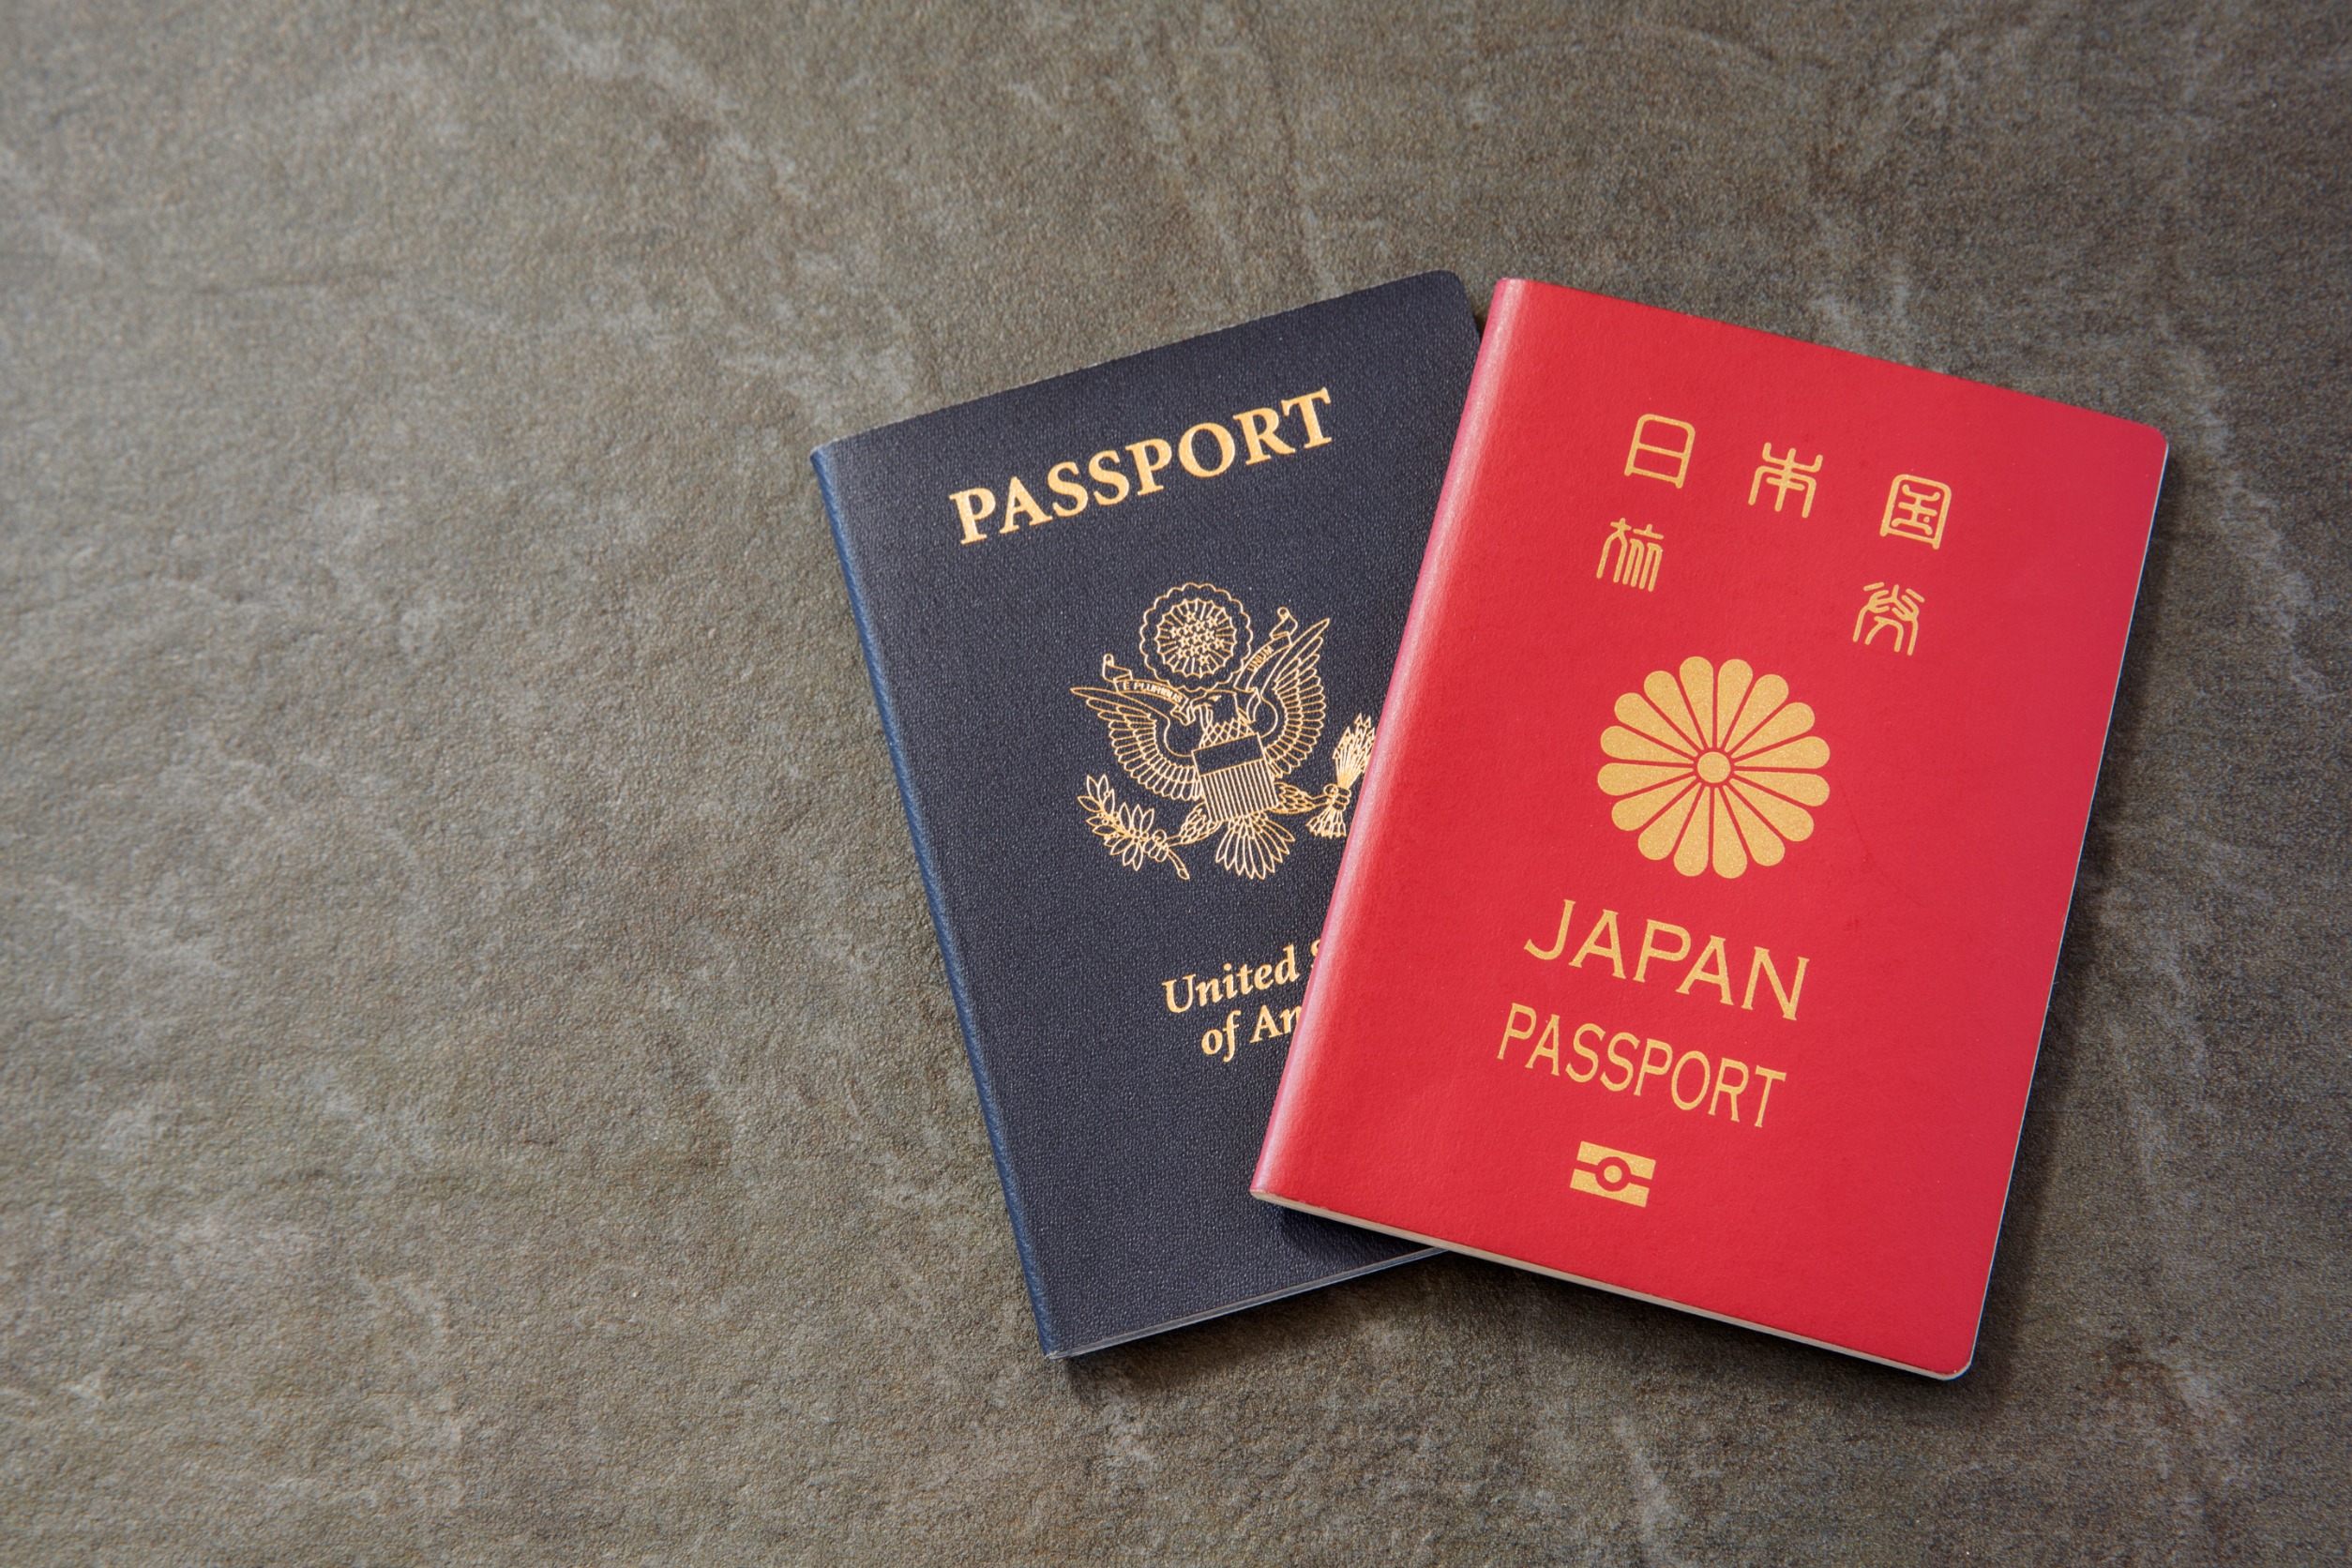 Dues Japan allow dual citizenship?